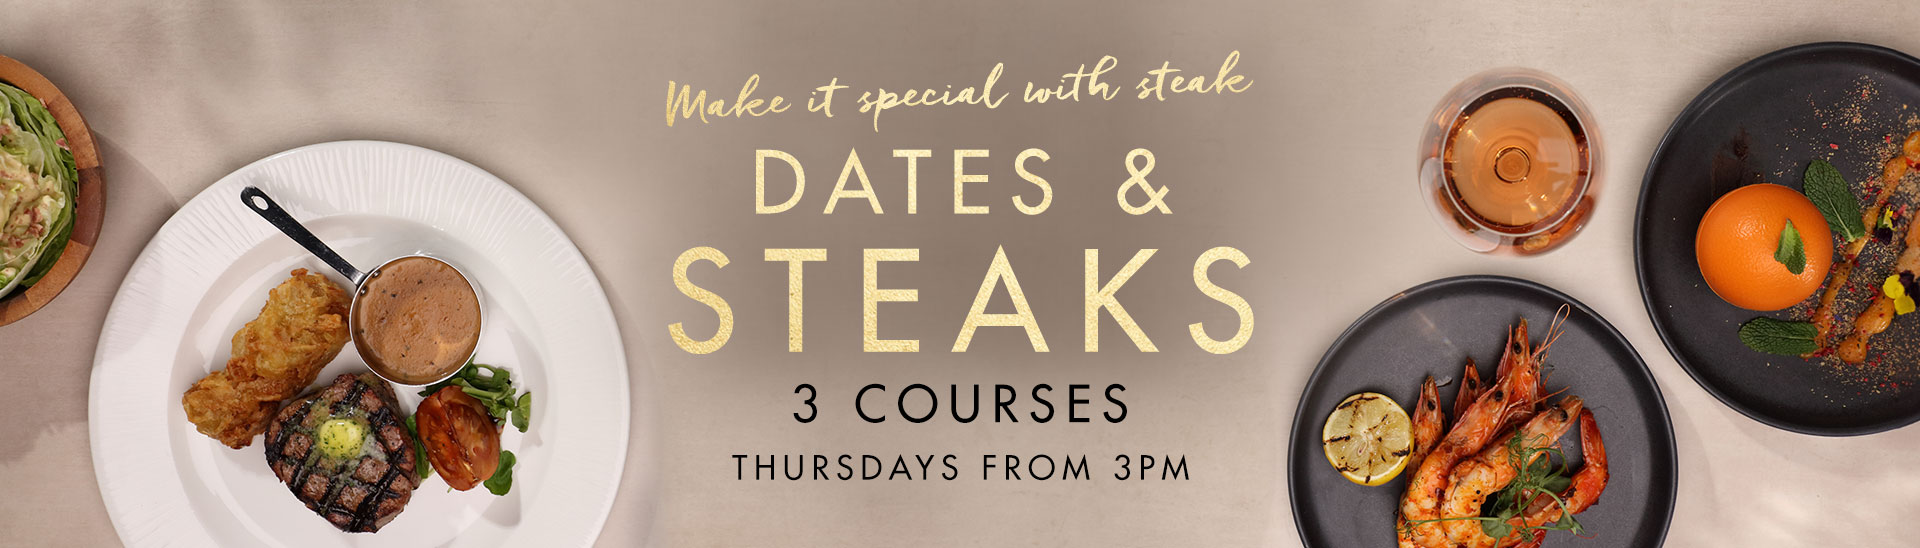 Dates & Steaks at Miller & Carter Aberdeen